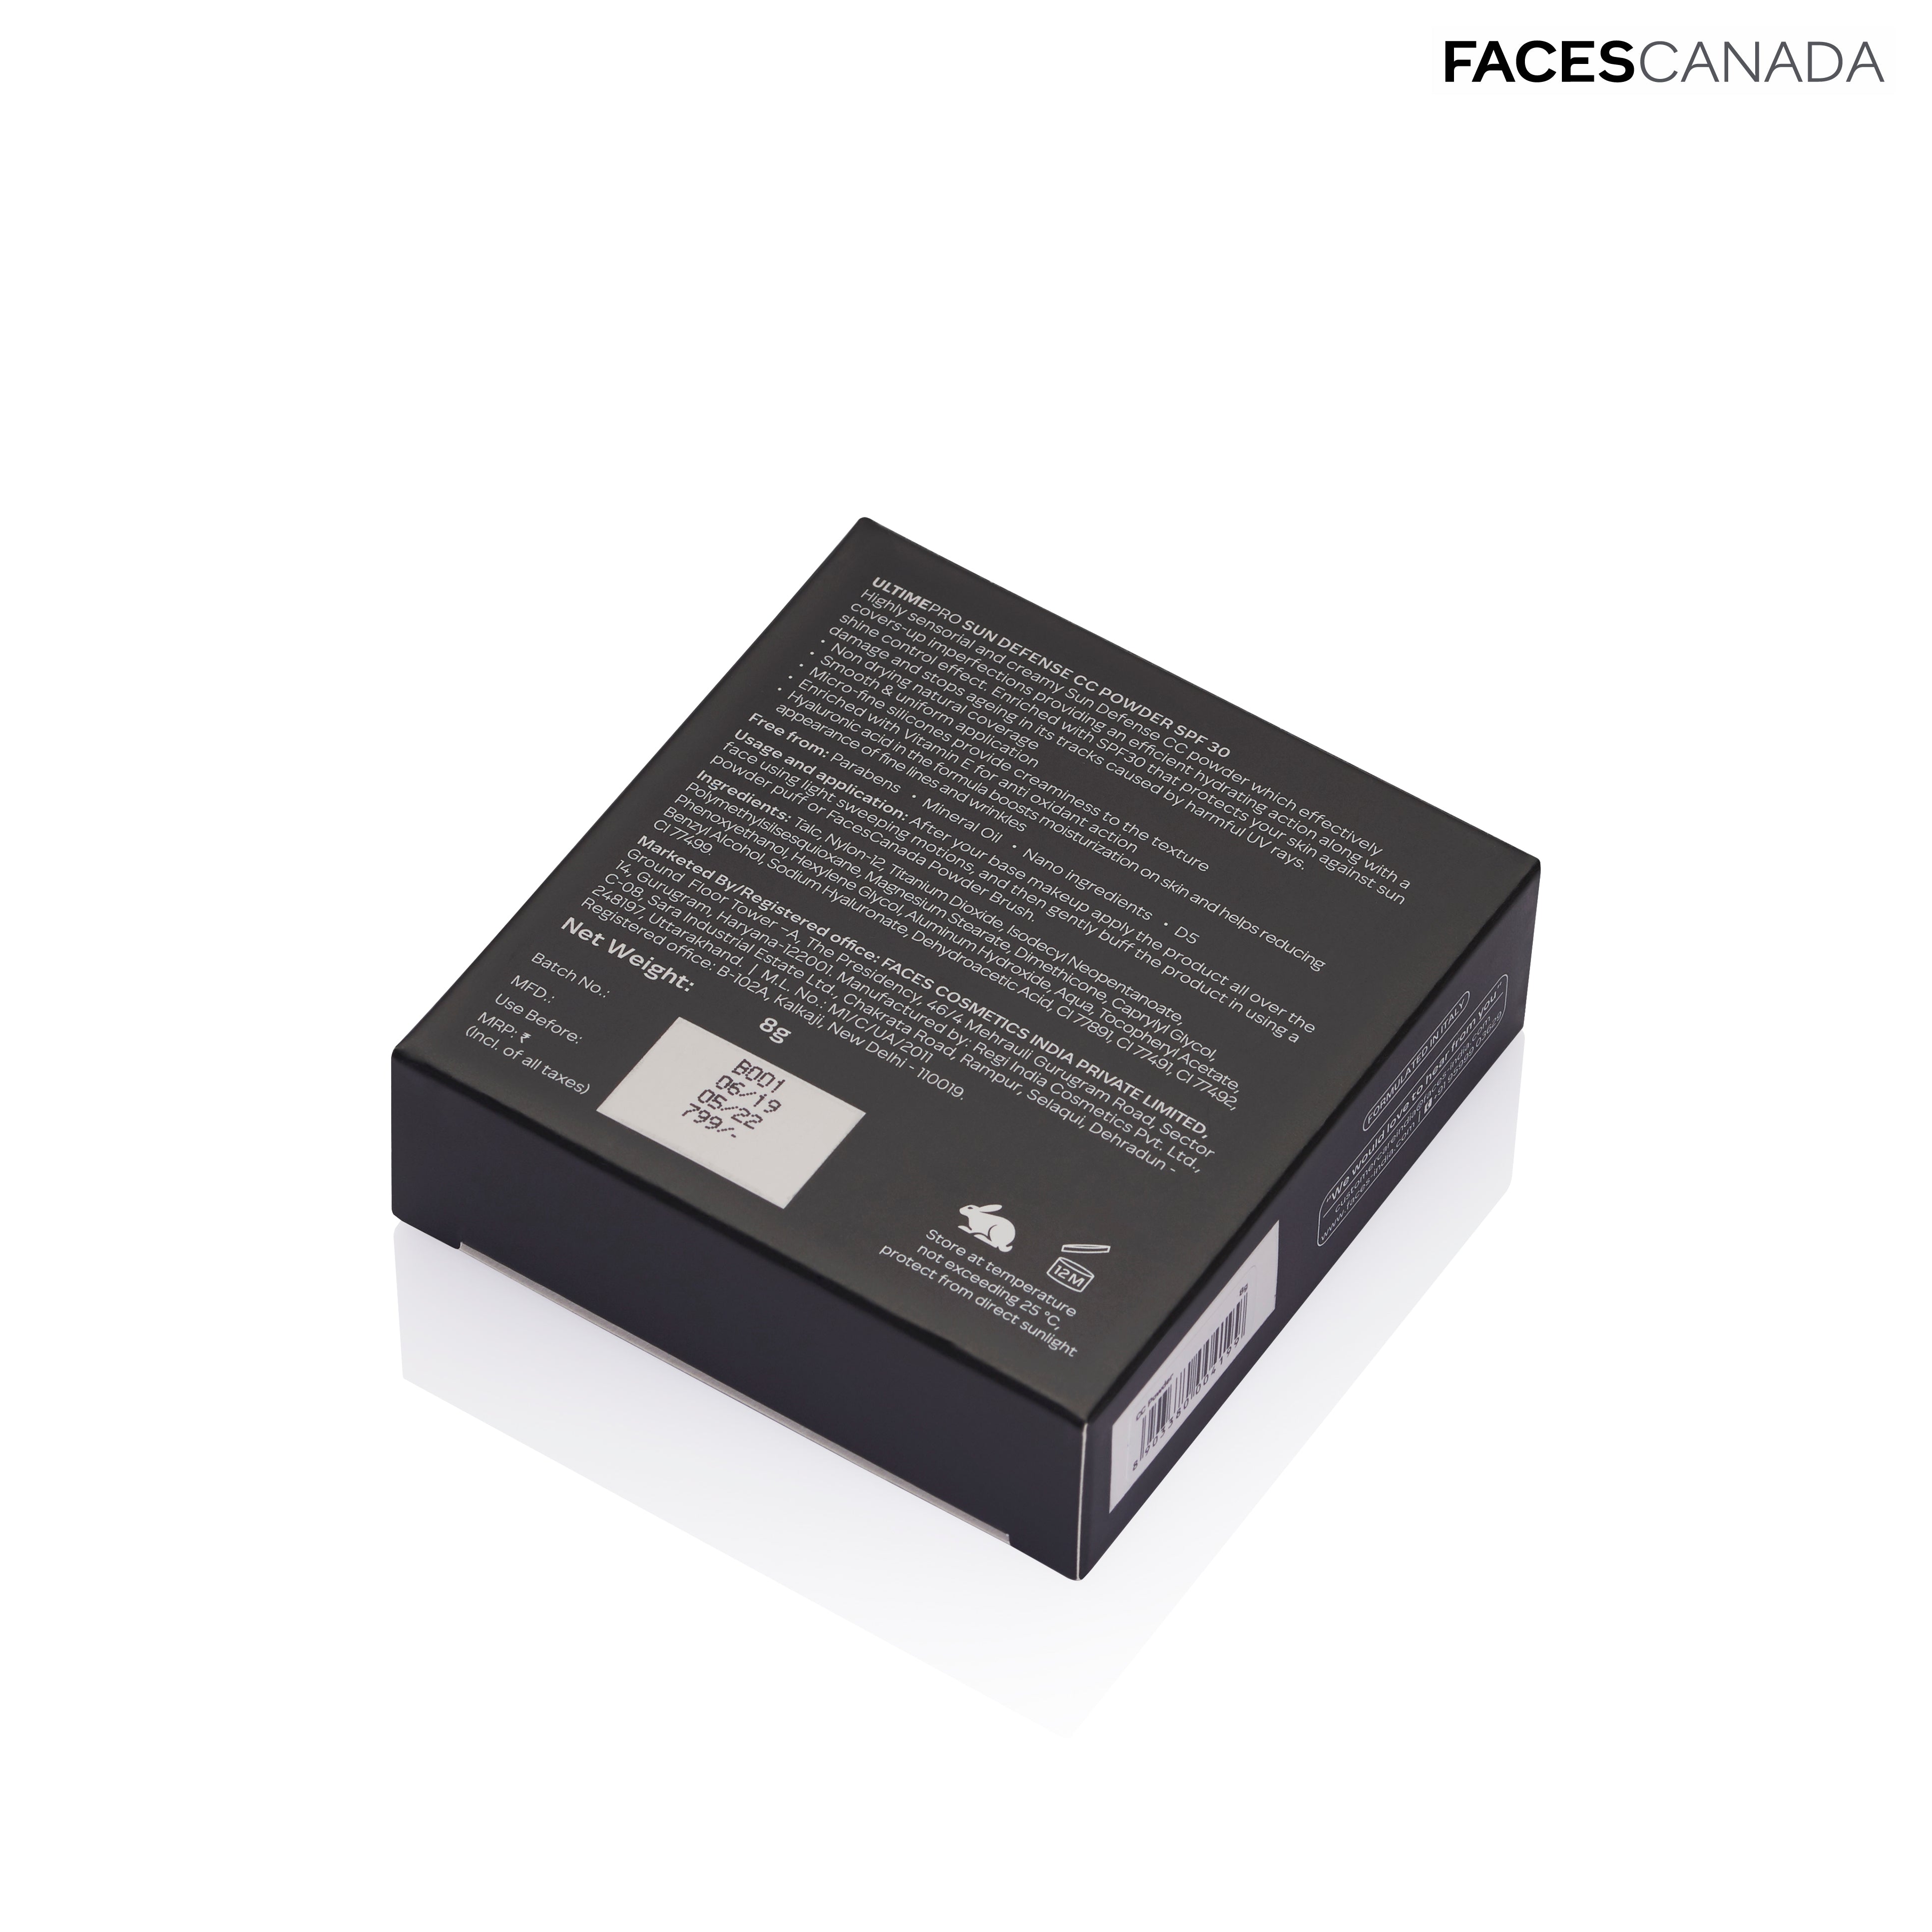 Faces Canada Ultime Pro Sun Defense CC Powder SPF 30 (8g) Faces Canada